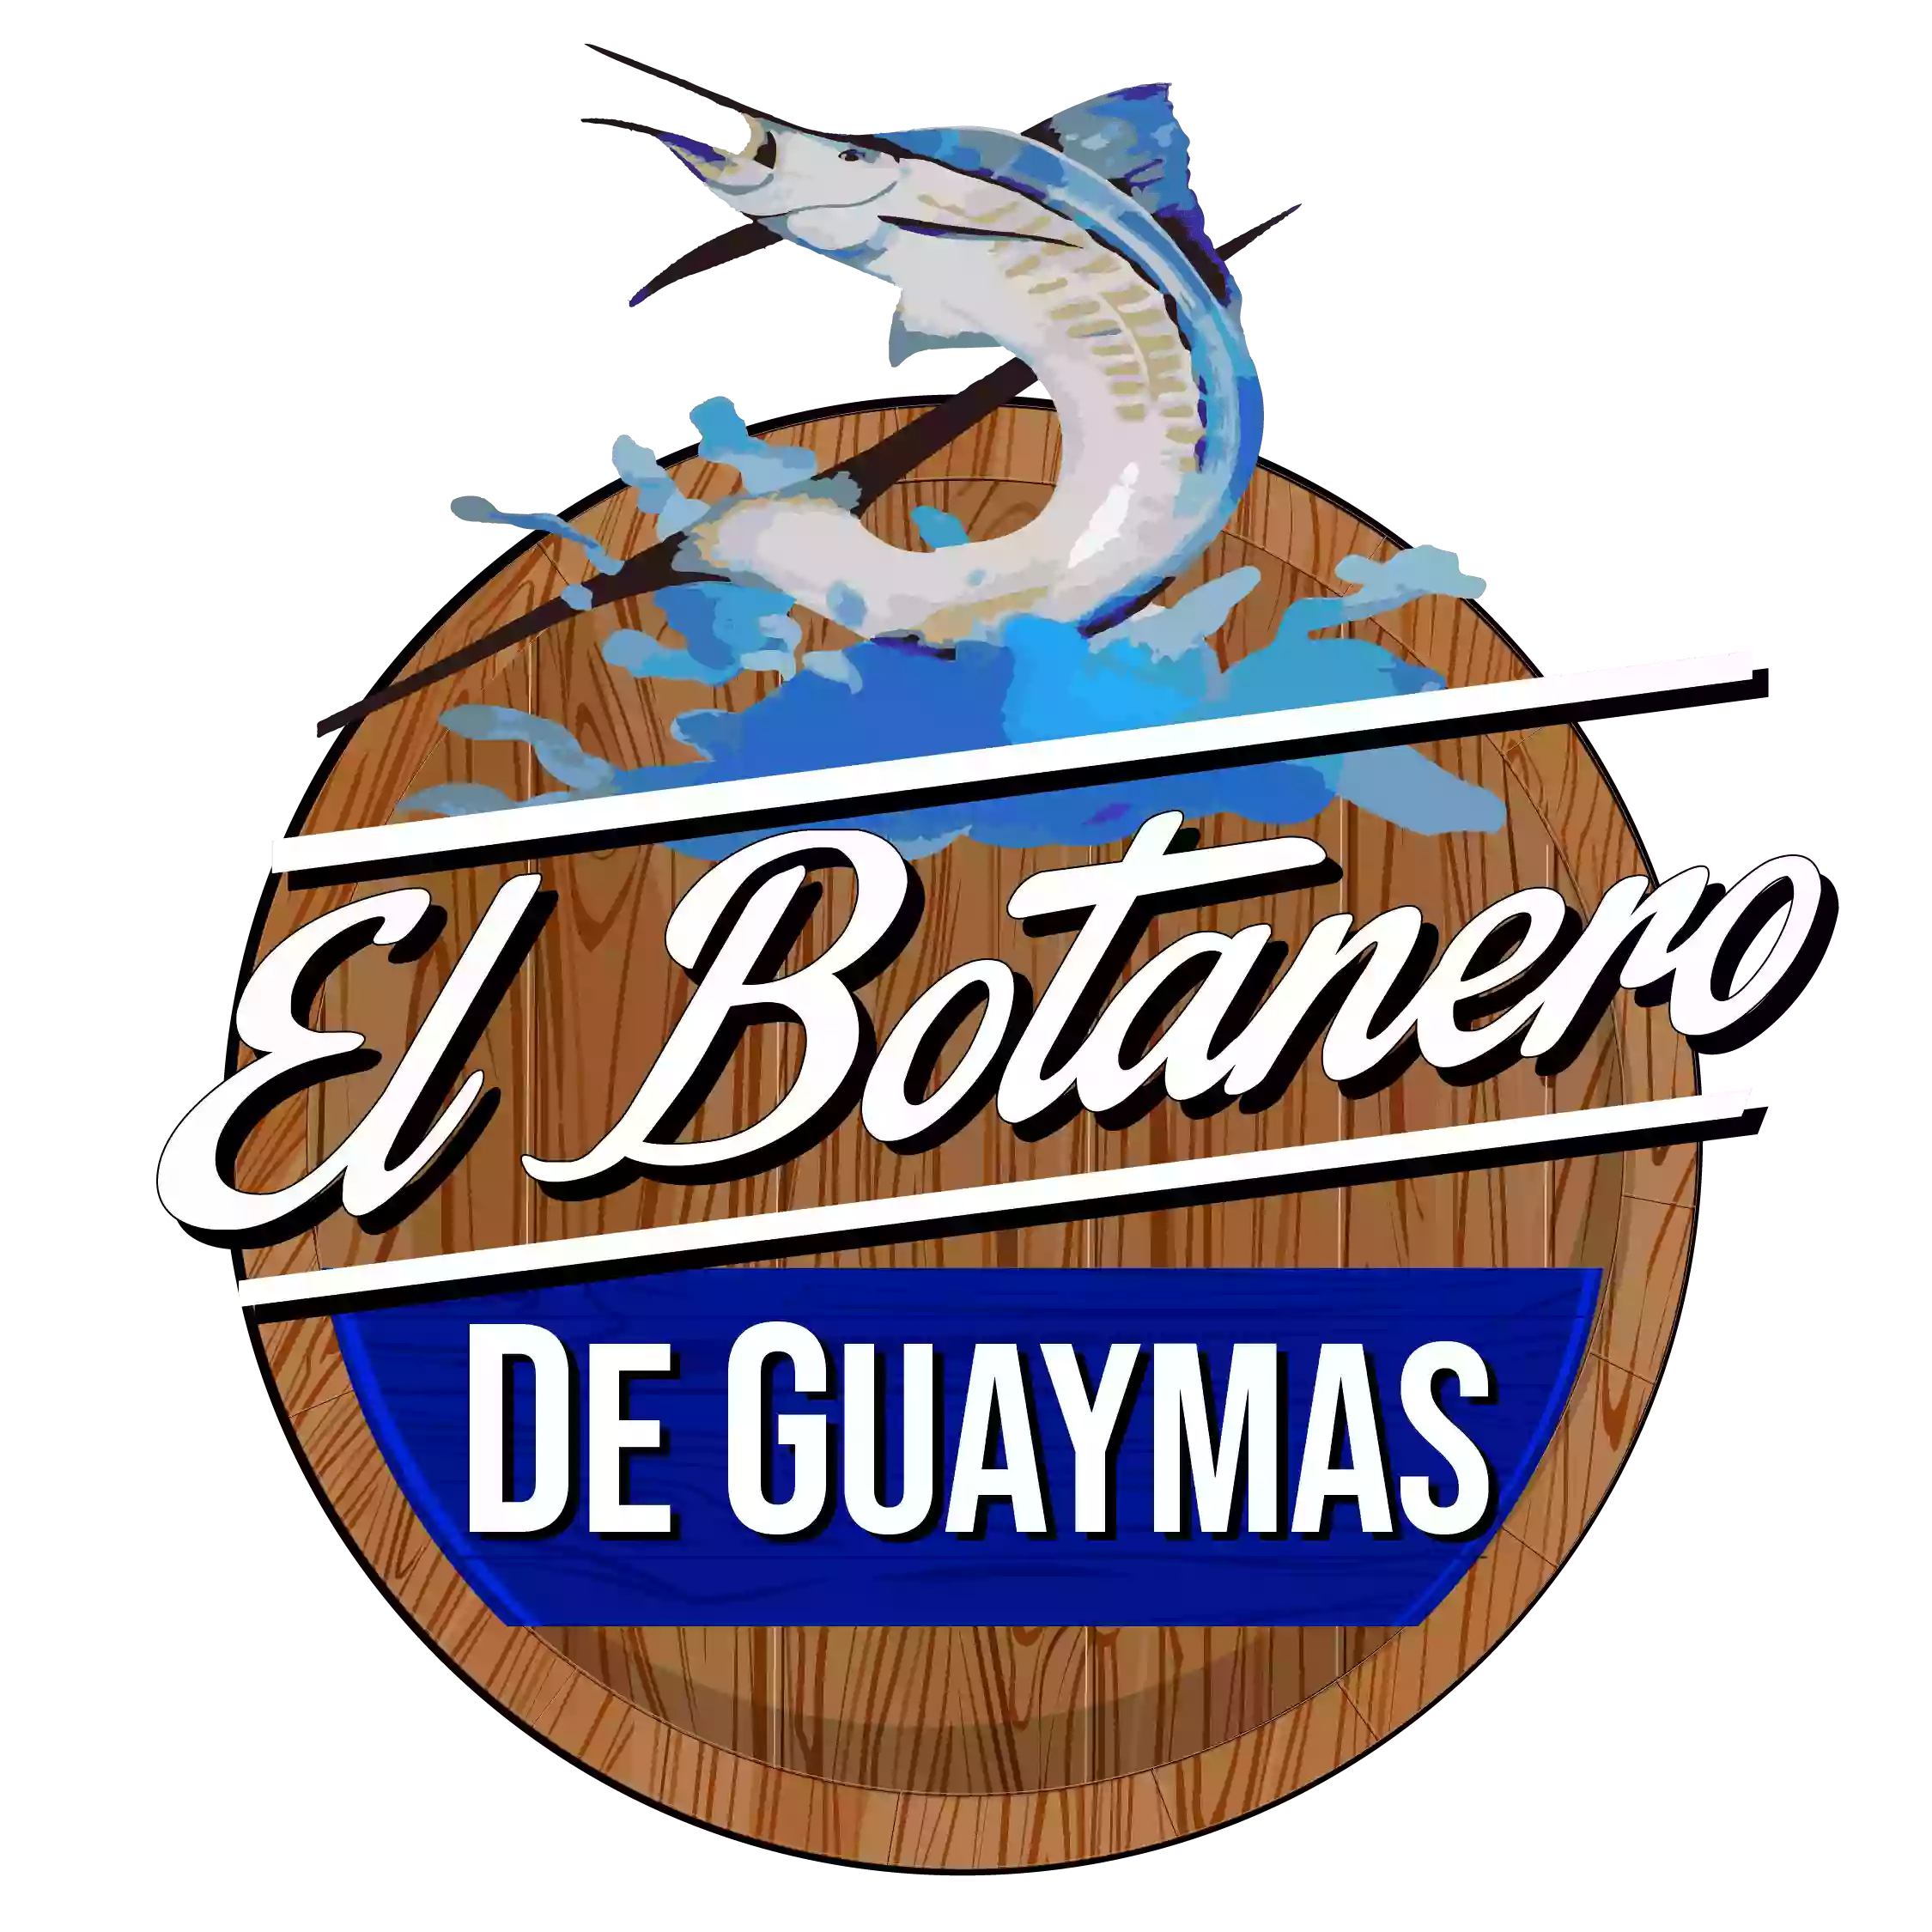 El Botanero de Guaymas